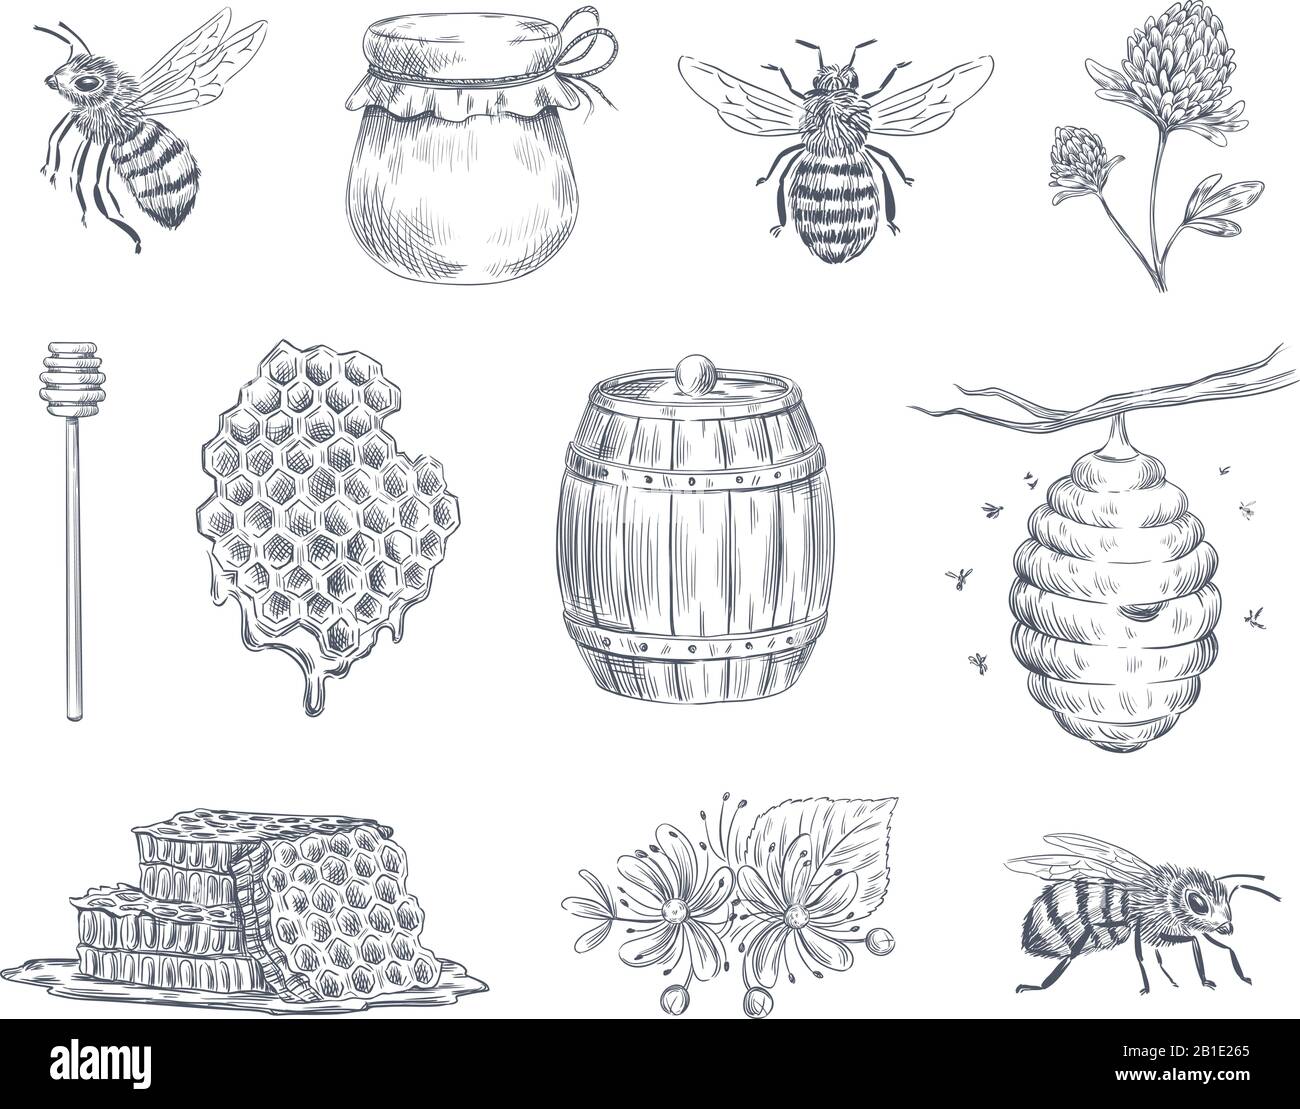 Bienengravur. Honigbienen, Imkerei und Honigwabe Vintage handgezeichnete Vektorgrafiken Stock Vektor